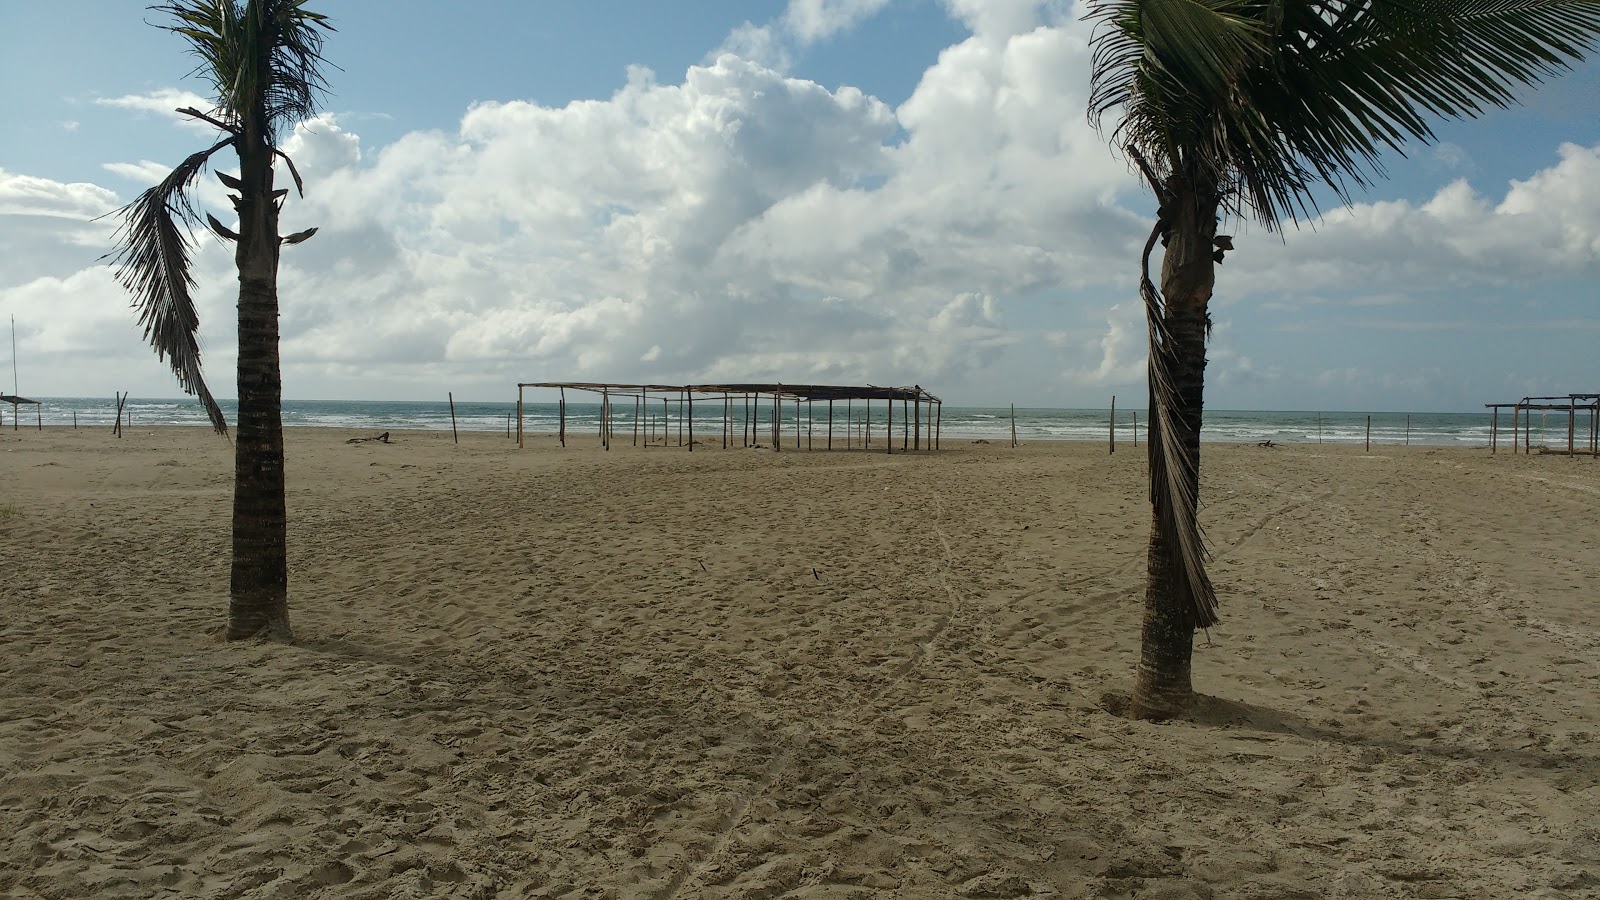 Jureia Plajı'in fotoğrafı imkanlar alanı